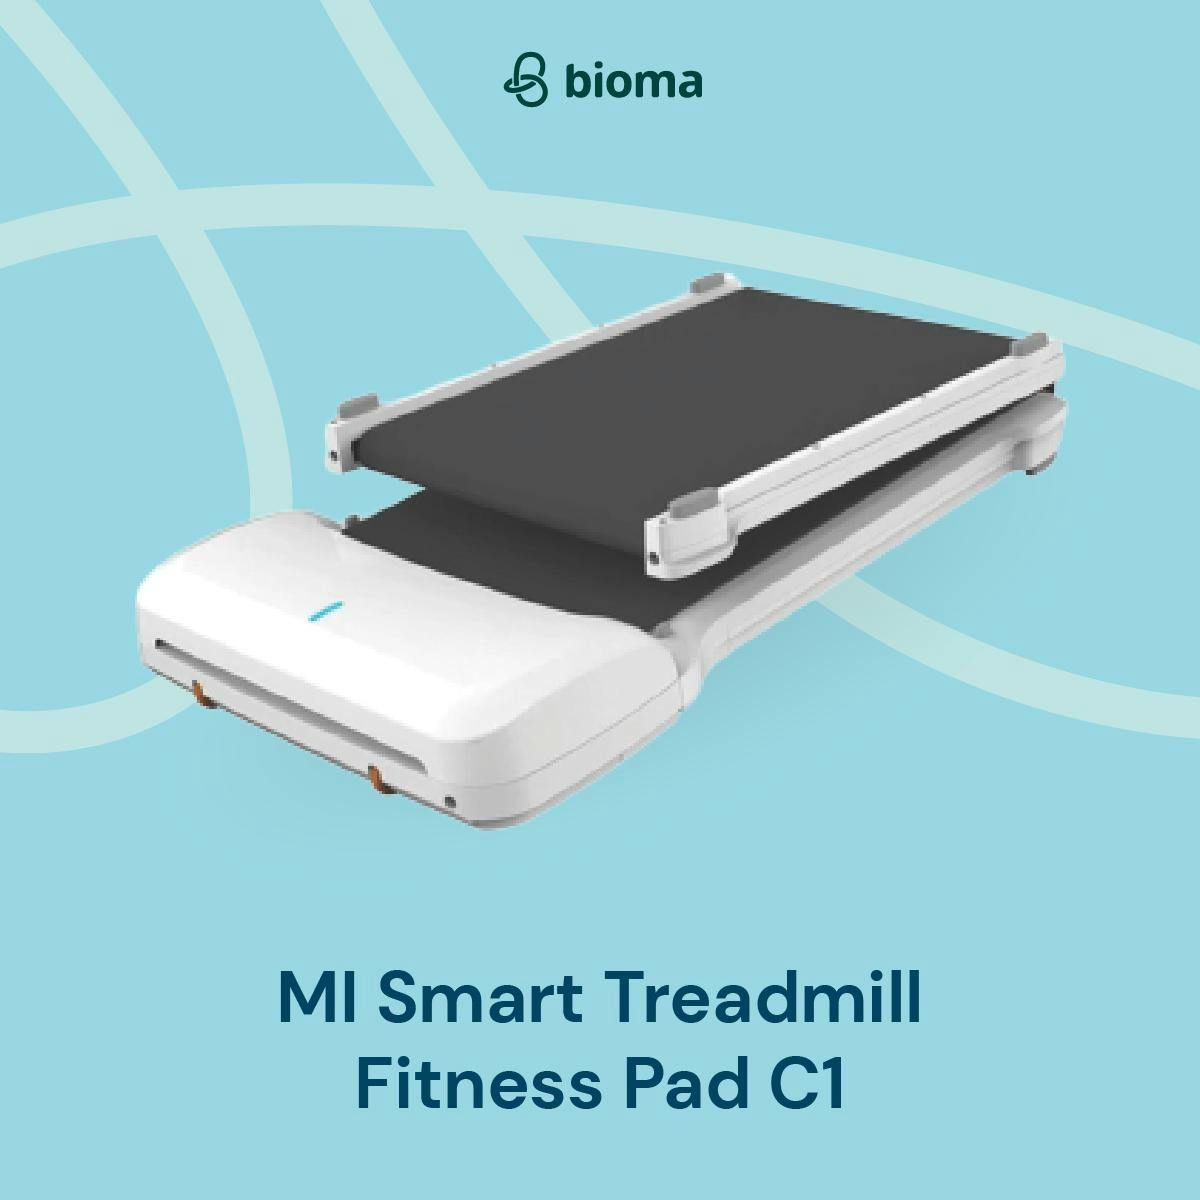 MI Smart Treadmill Fitness Pad C1